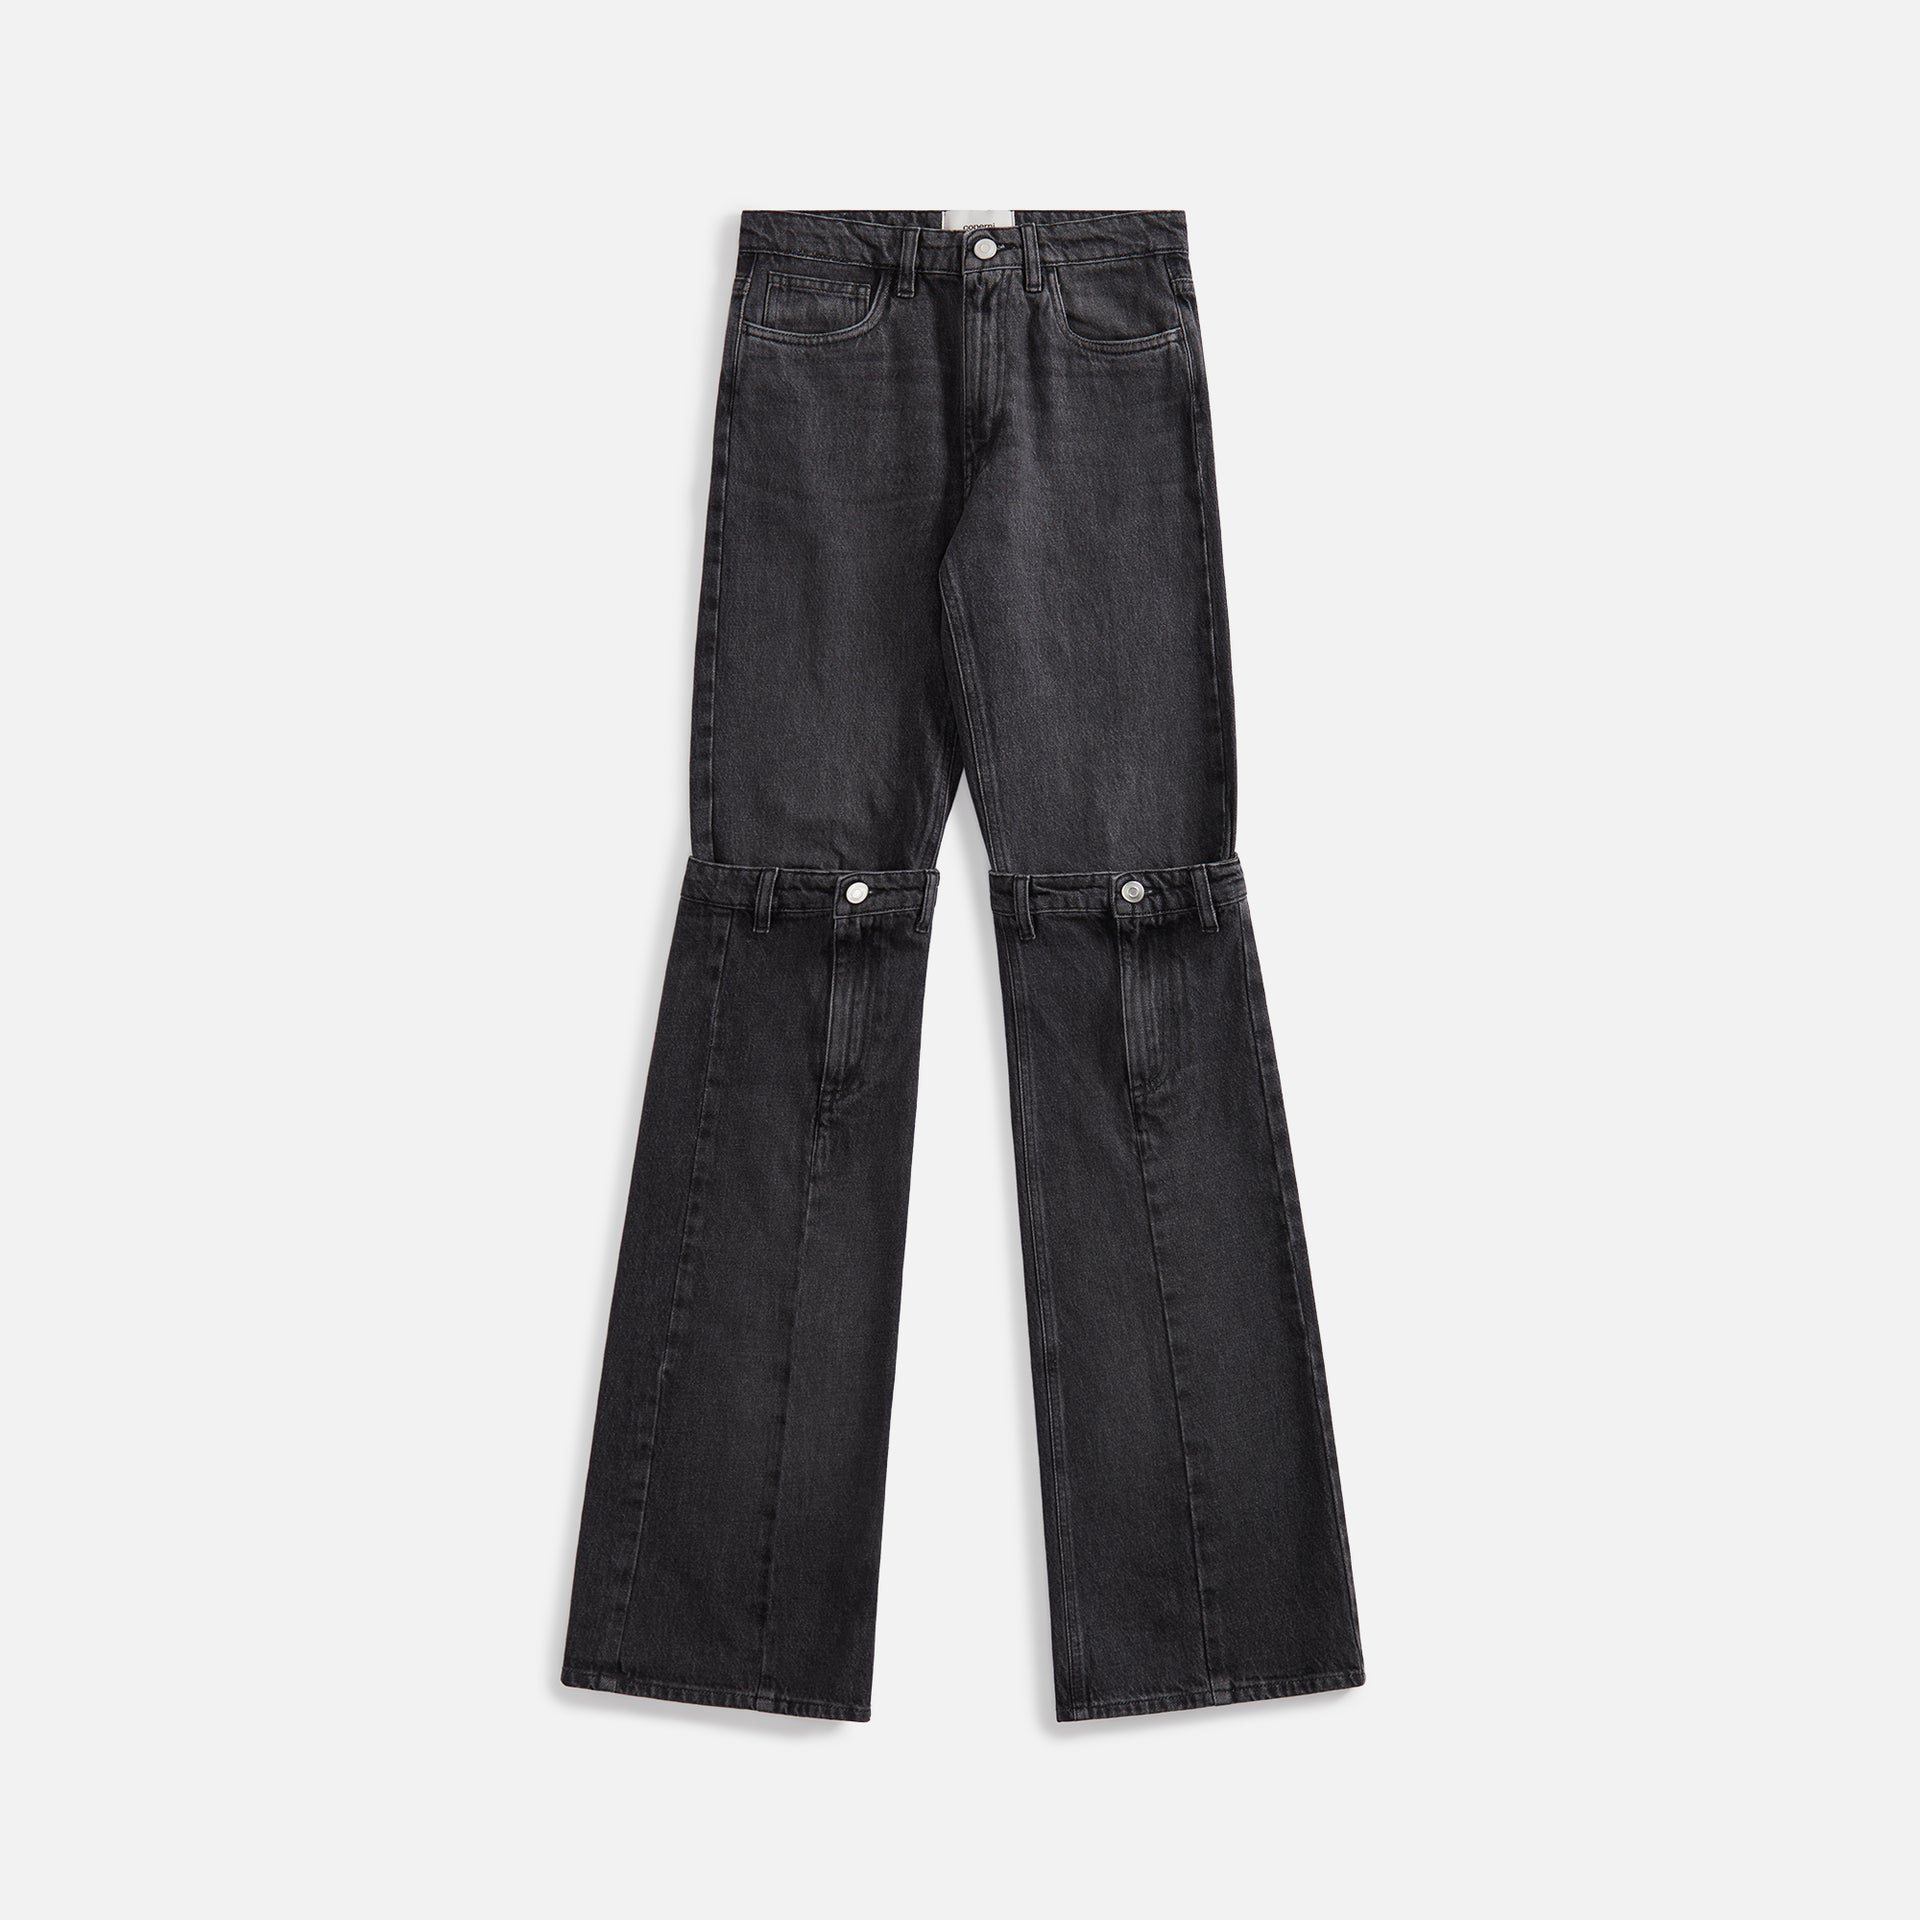 Coperni Open Knee Jeans - Washed Black